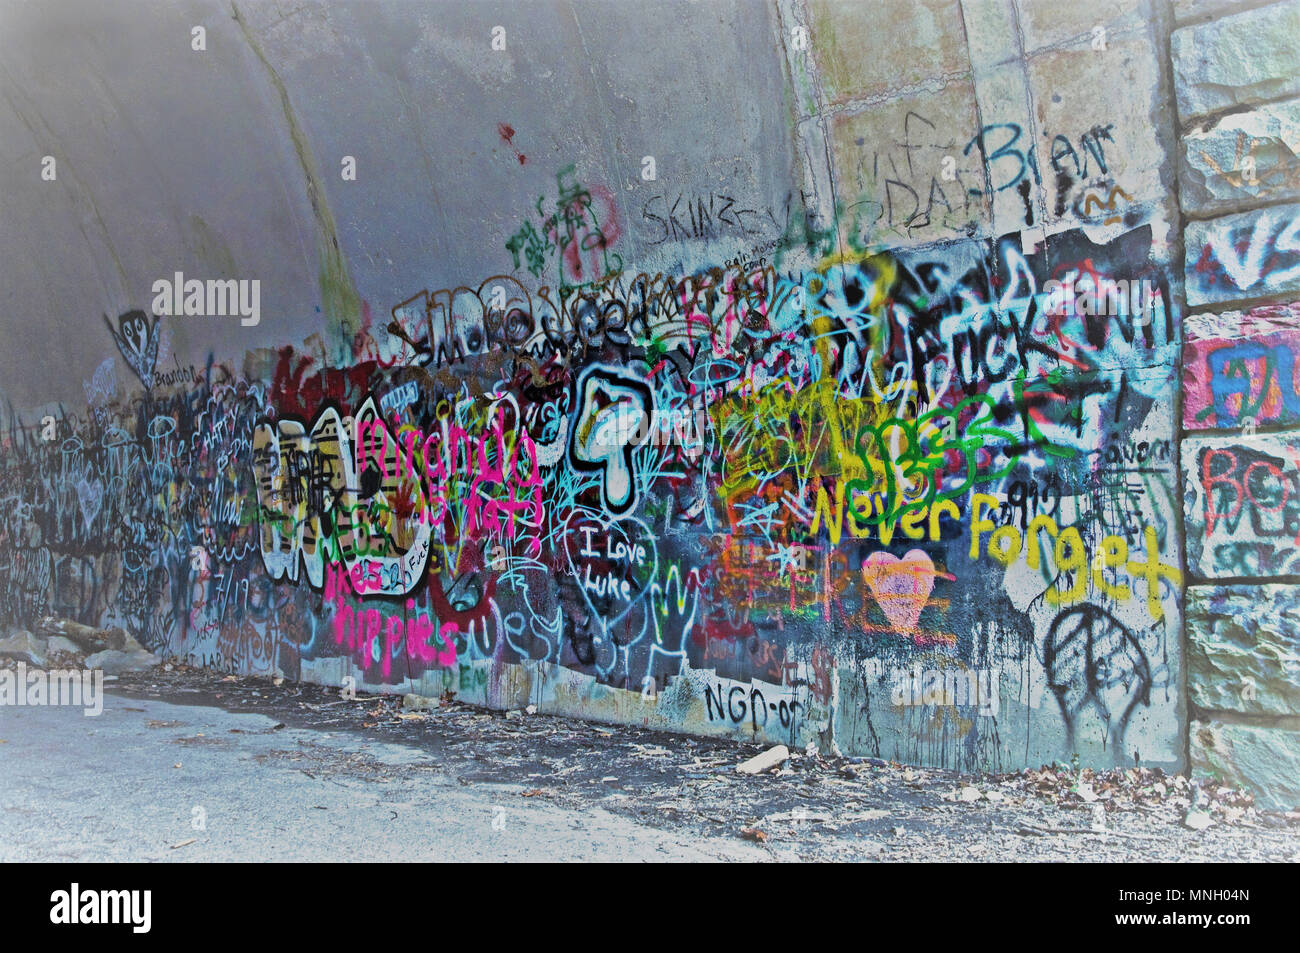 Graffiti on a Tunnel Wall Stock Photo